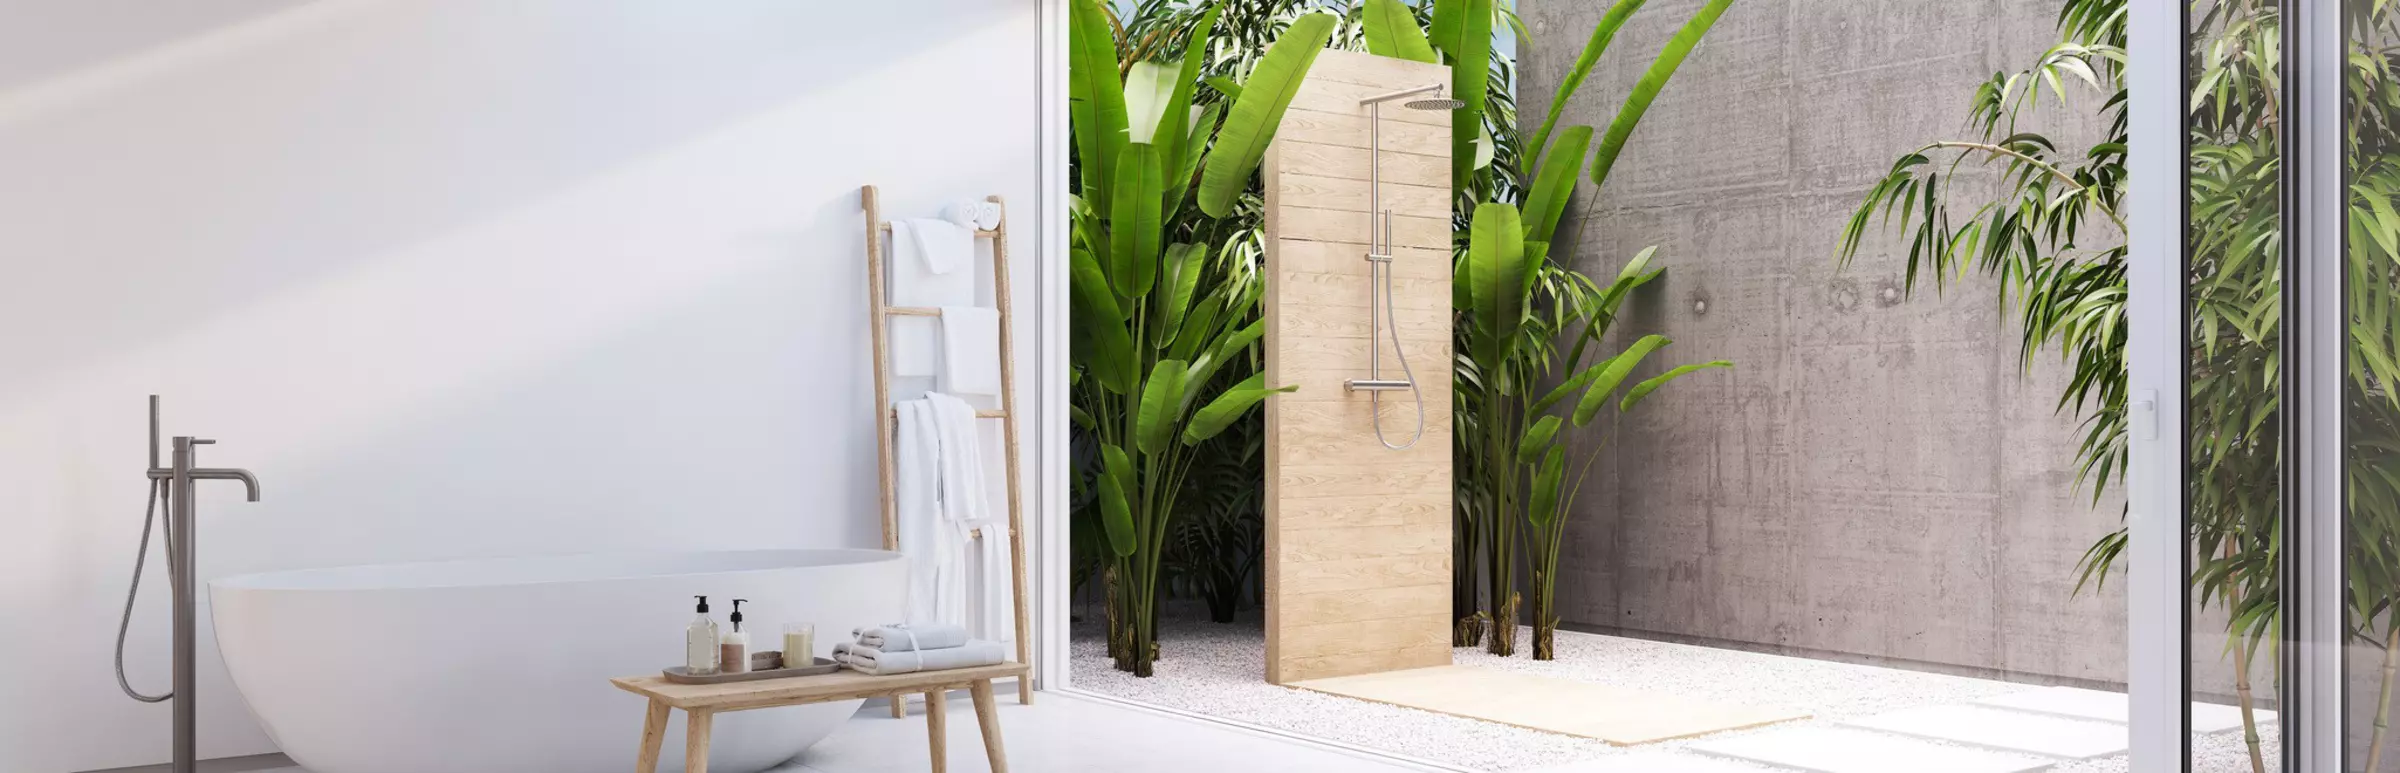 Rendering eines Badezimmers mit Outdoor-Dusche und freistehender Badewanne